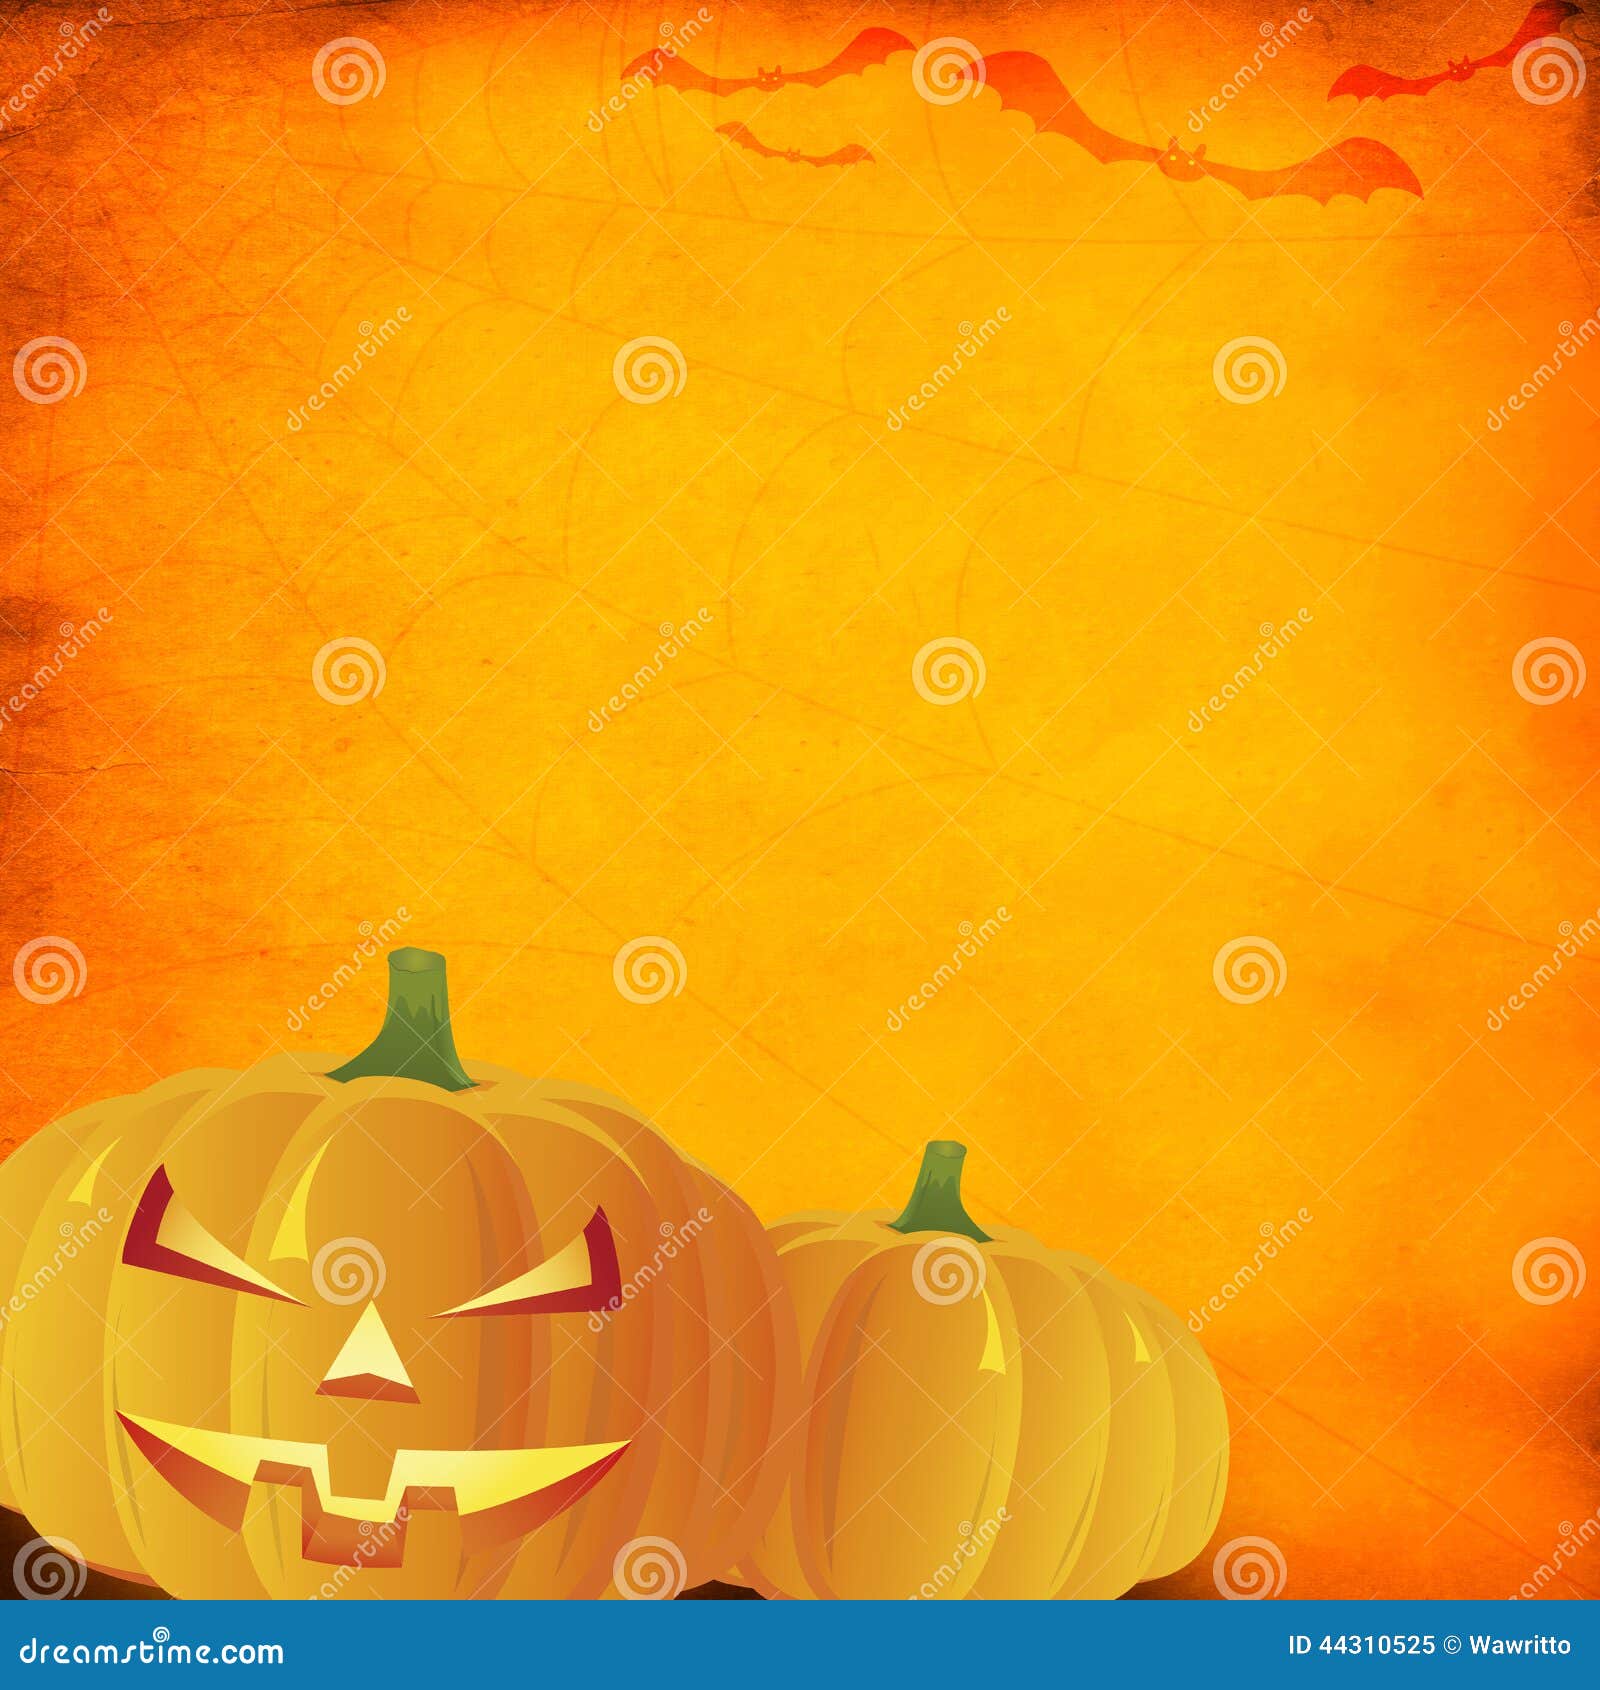 Grunge Orange Halloween Background Stock Image - Image: 44310525